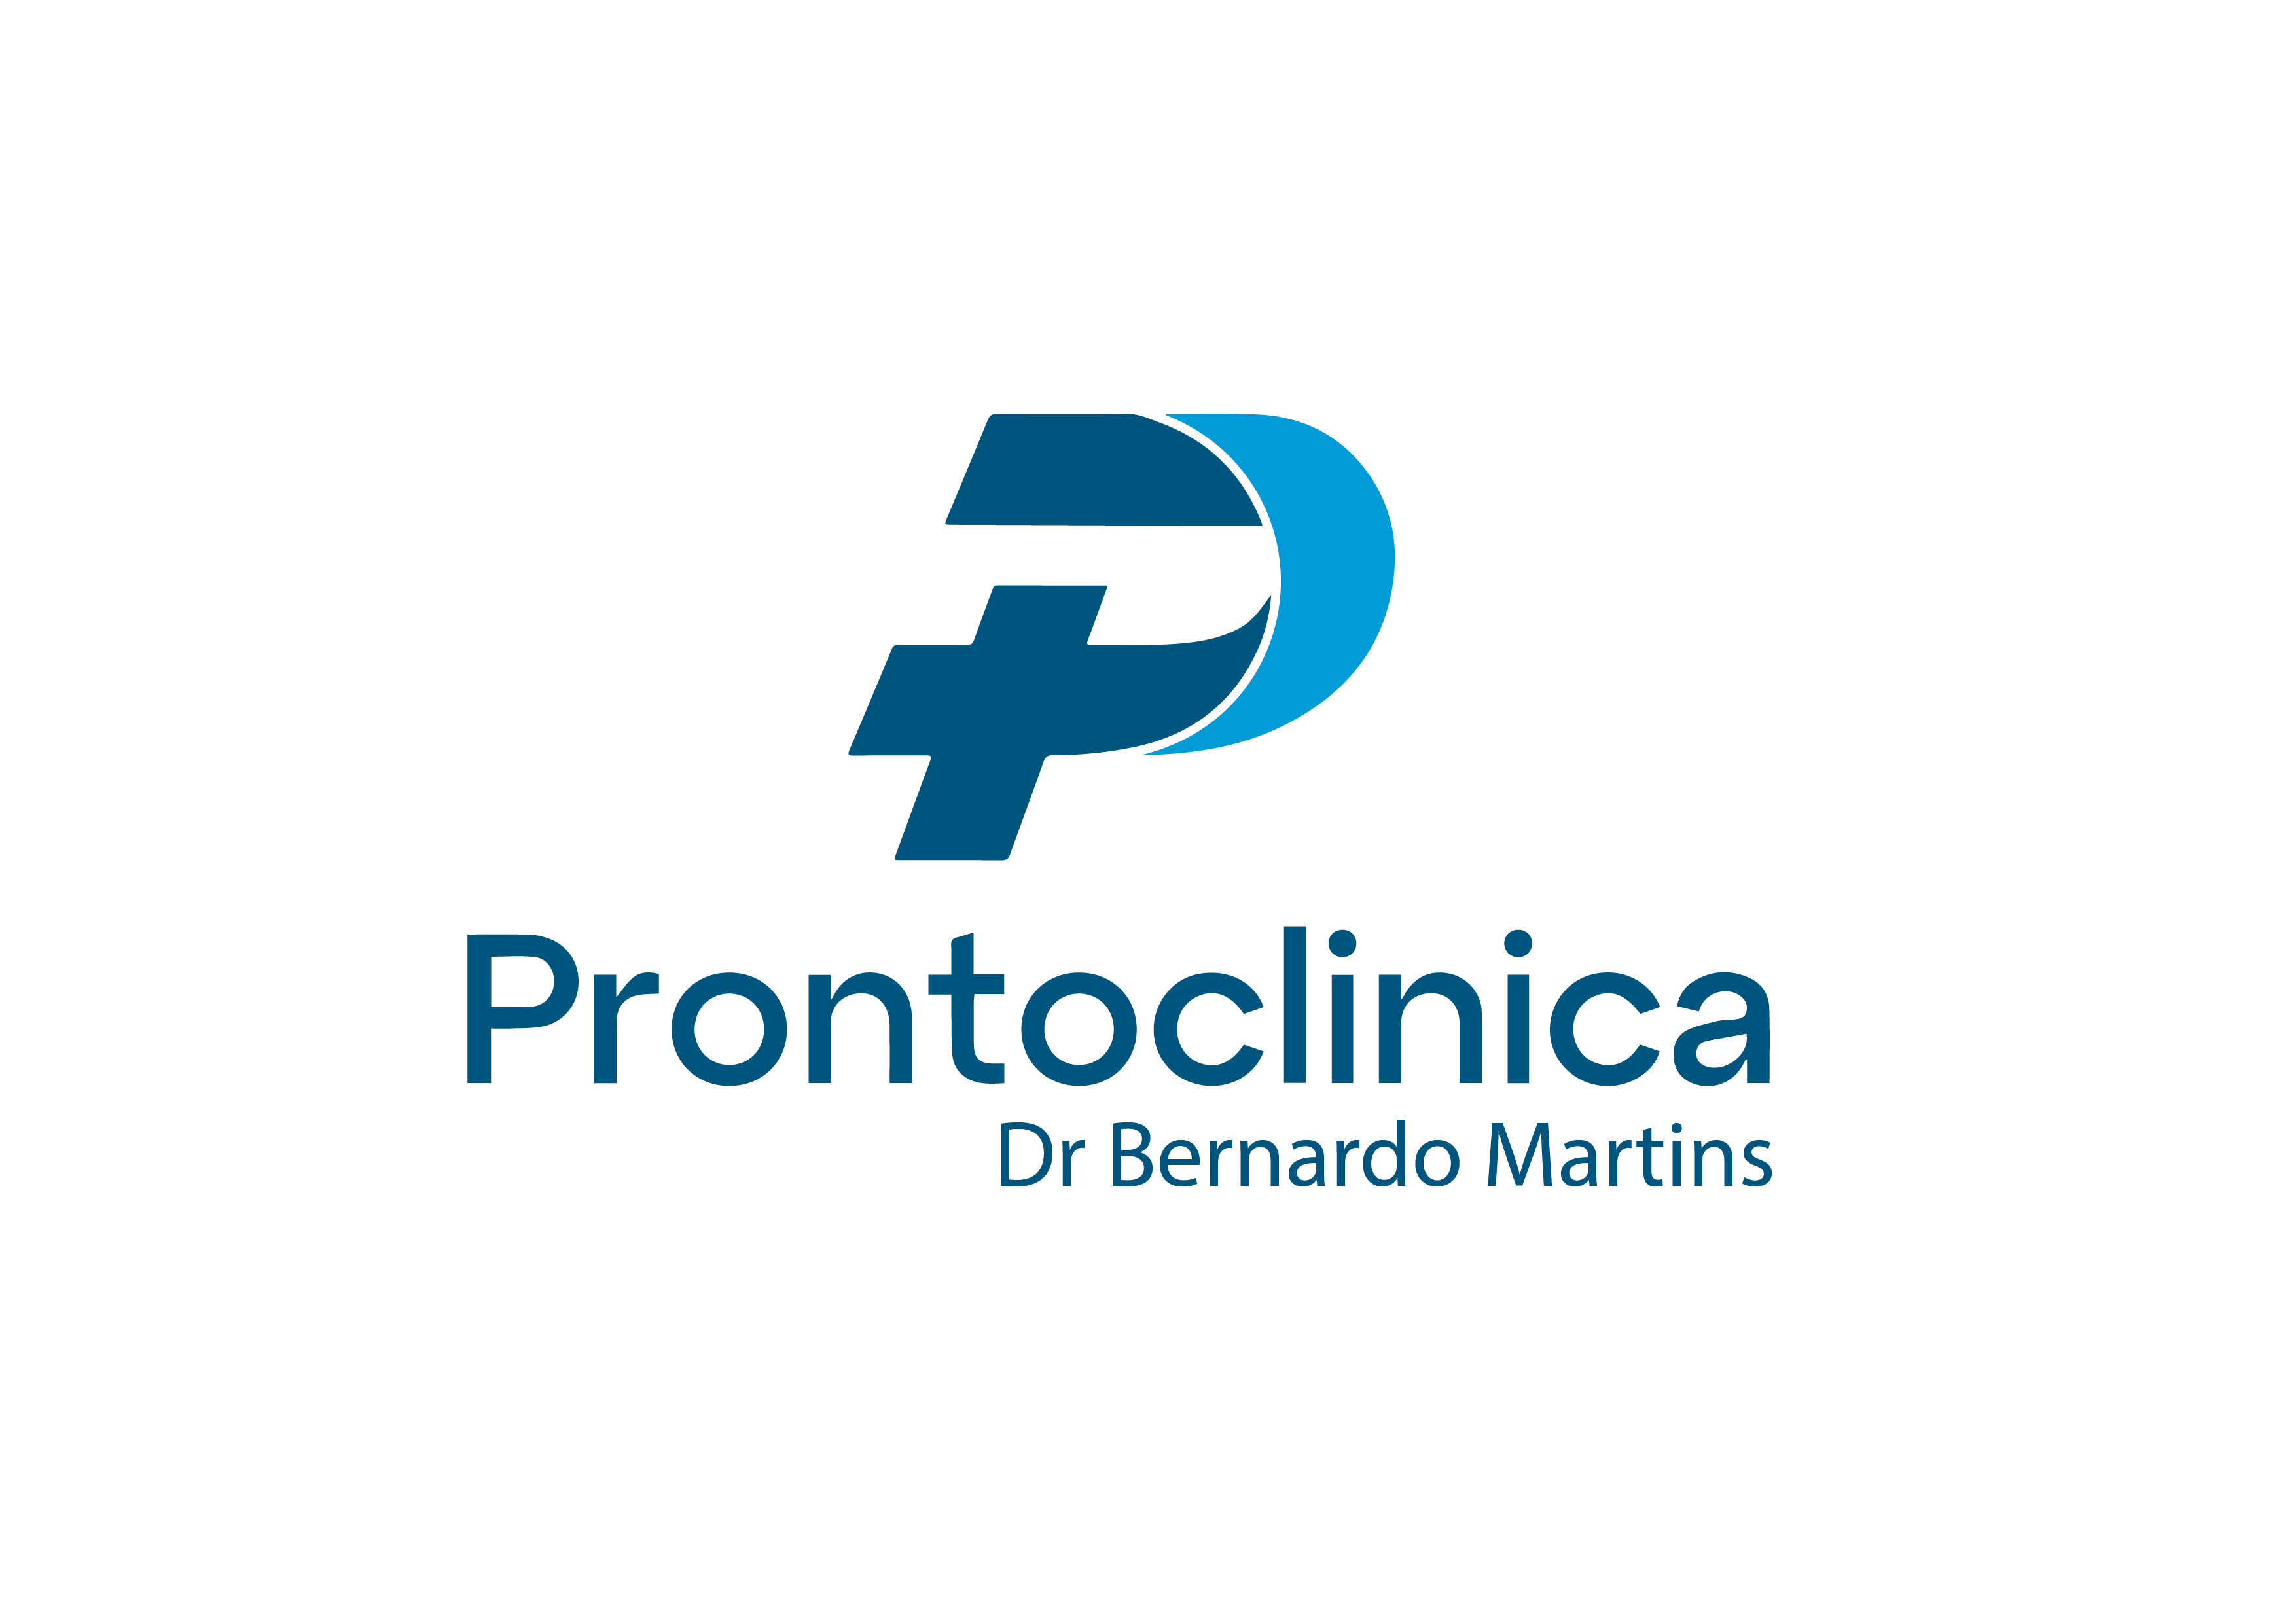 Pronto Clinica Dr. Bernardo Martins Logo